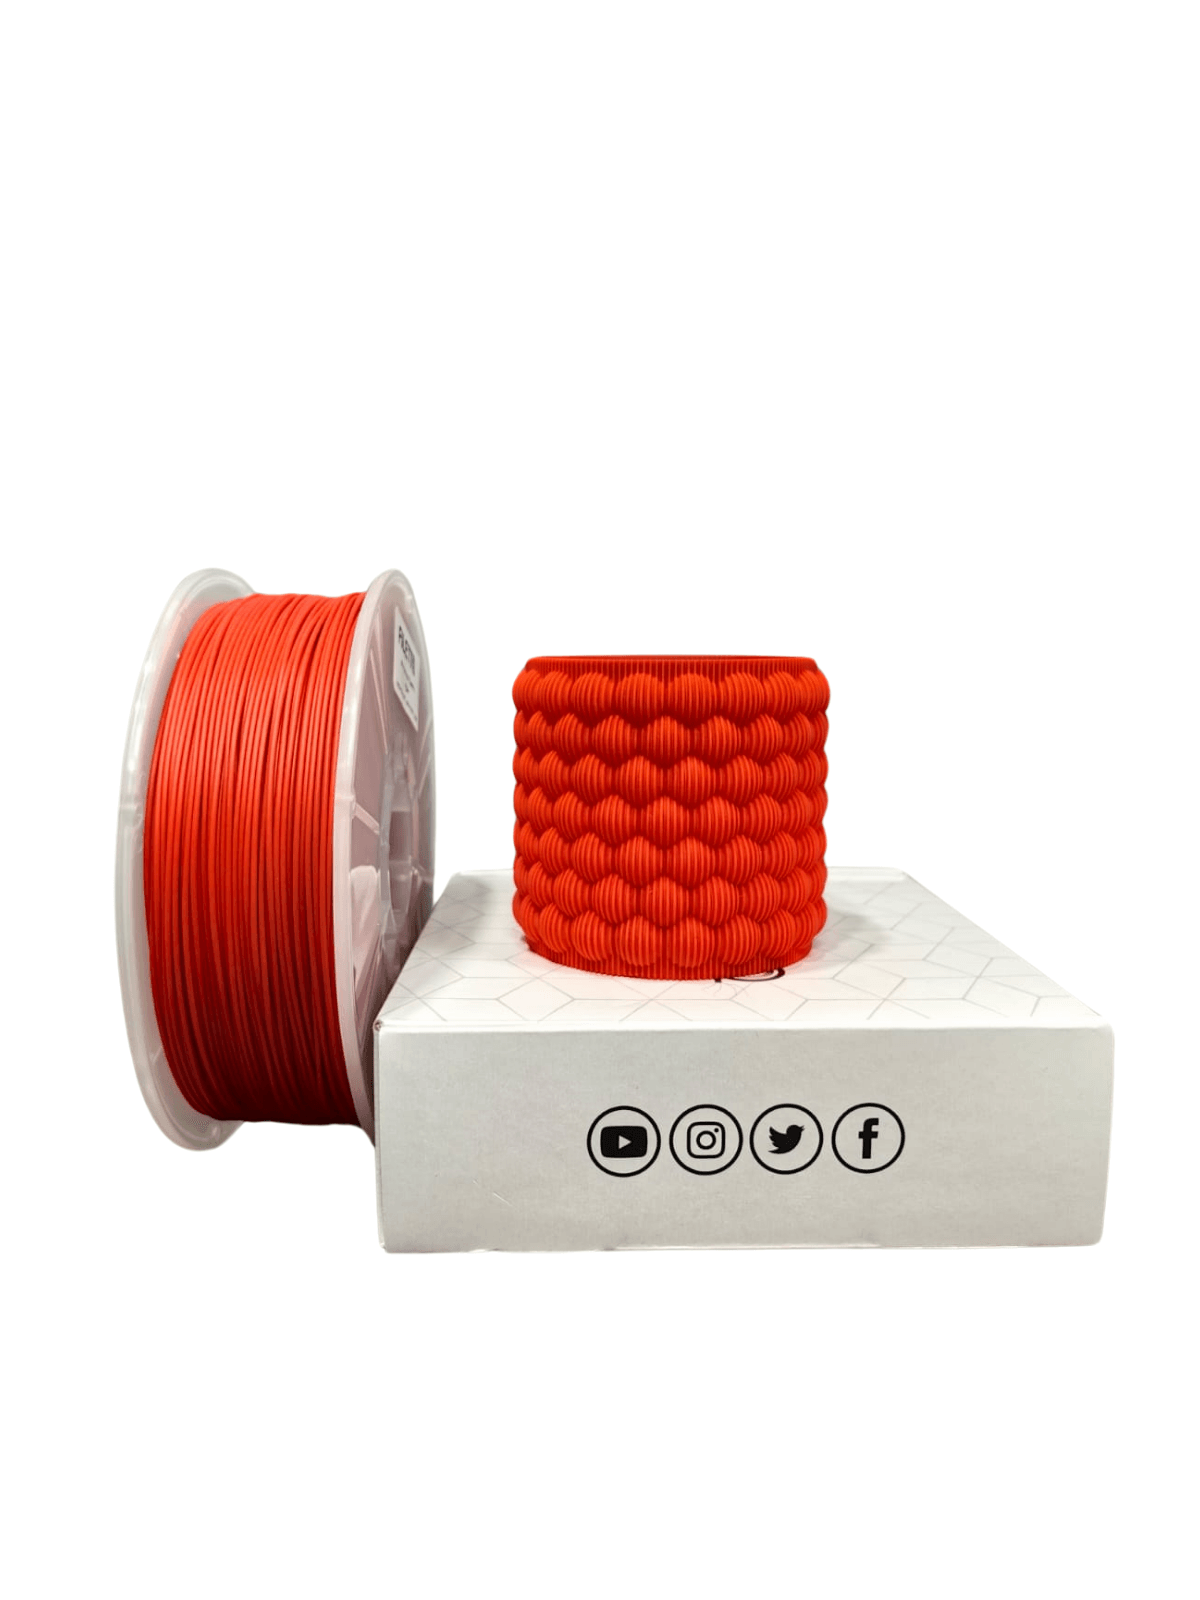 Filetto Pla+ Filament 1.75mm 1 KG - Kırmızı